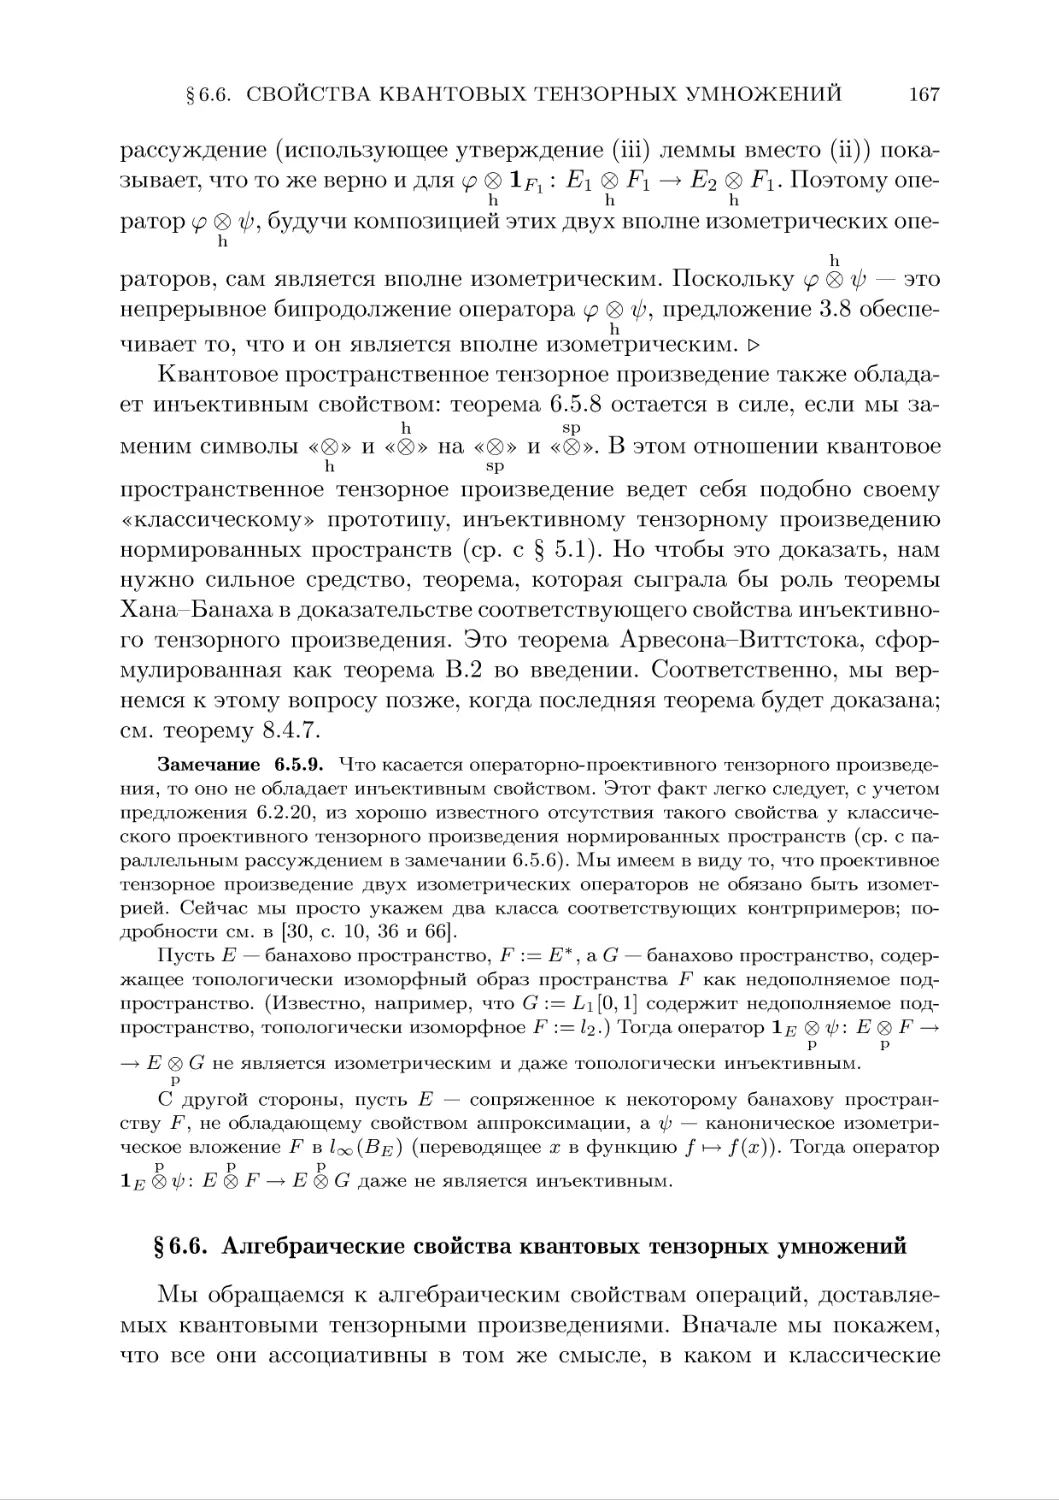 § 6.6. Алгебраические свойства квантовых тензорных  умножений